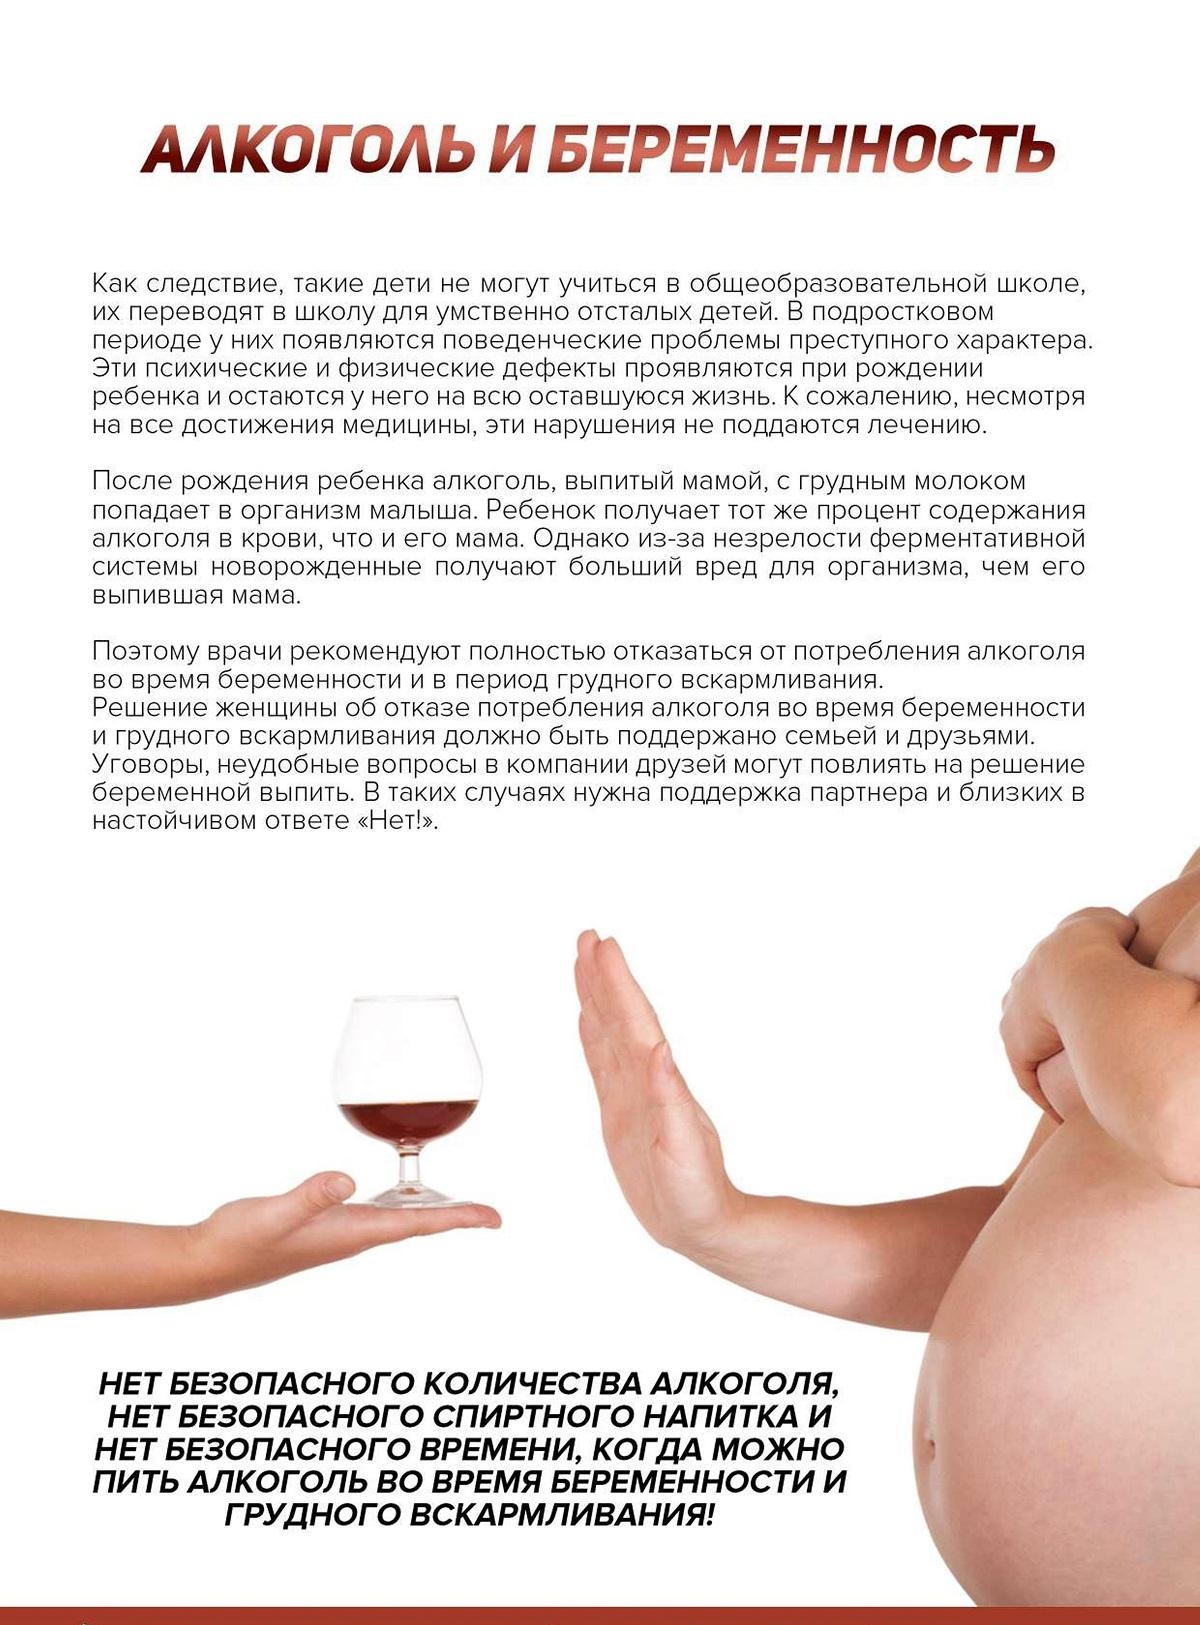 Алкоголь при беременности – употребление допустимо или нет